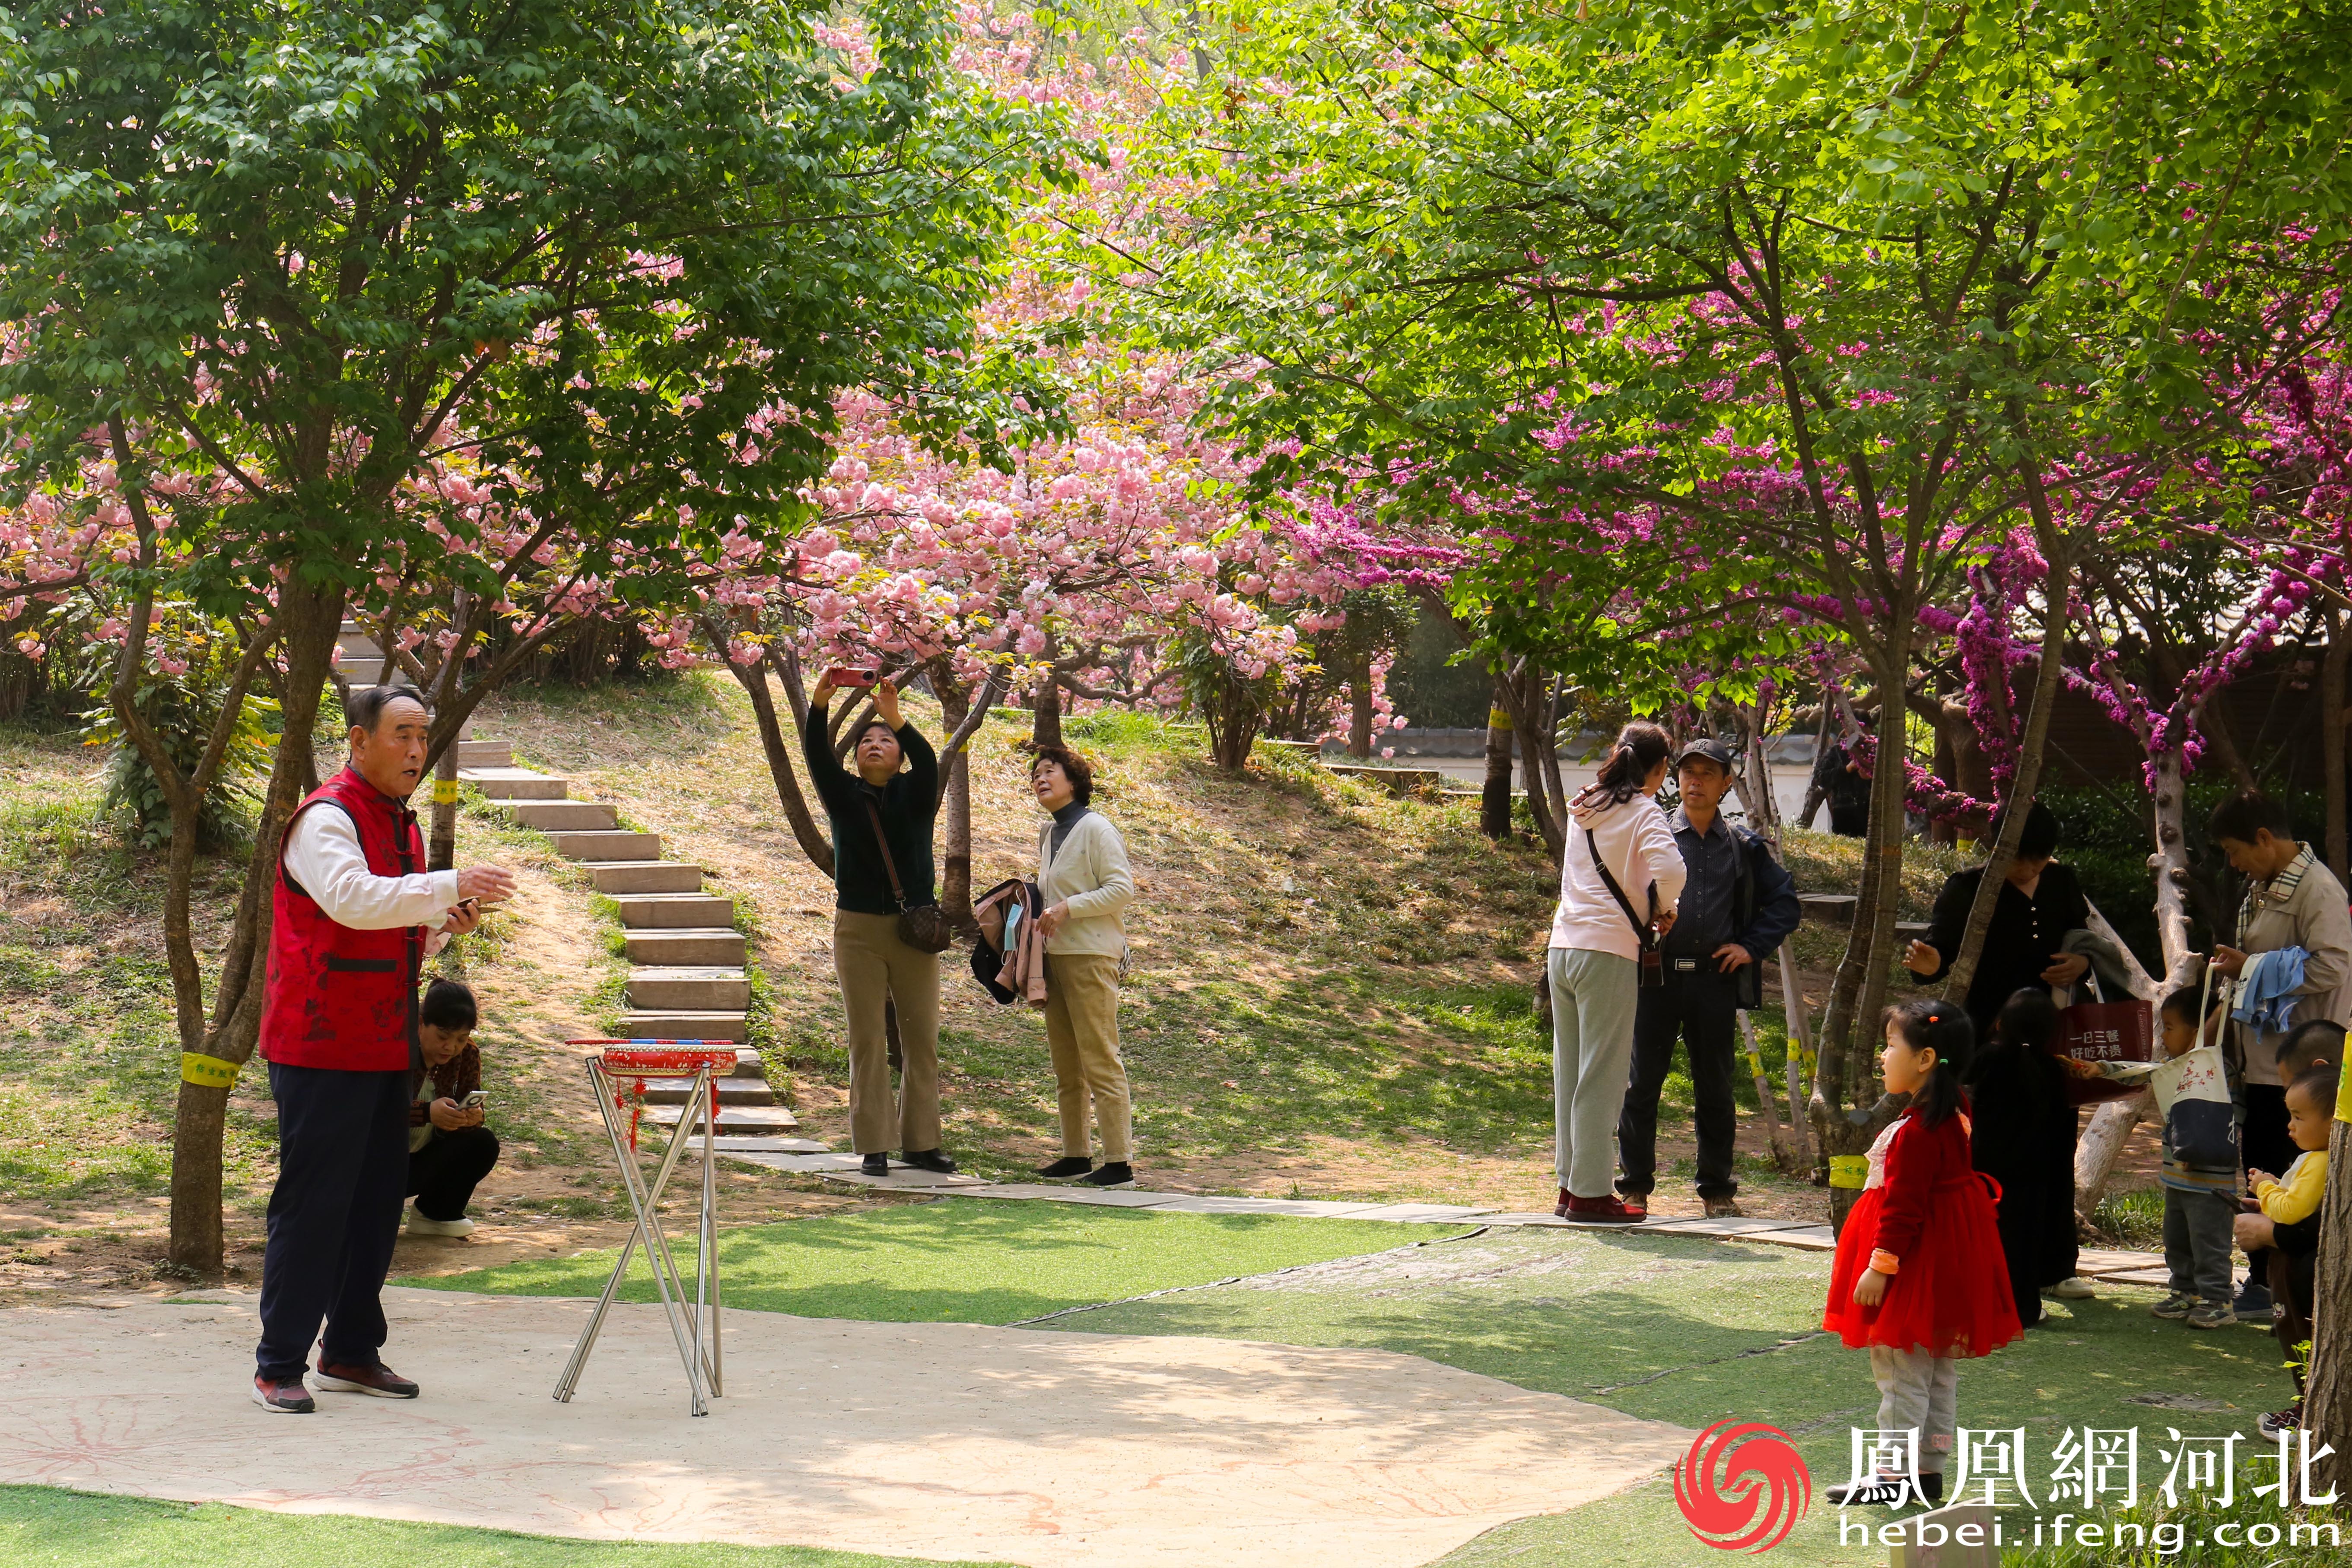 在石门公园的一角老人、女孩和盛开的花朵都融为一体，共同构成了一个充满诗意和温馨的场景。